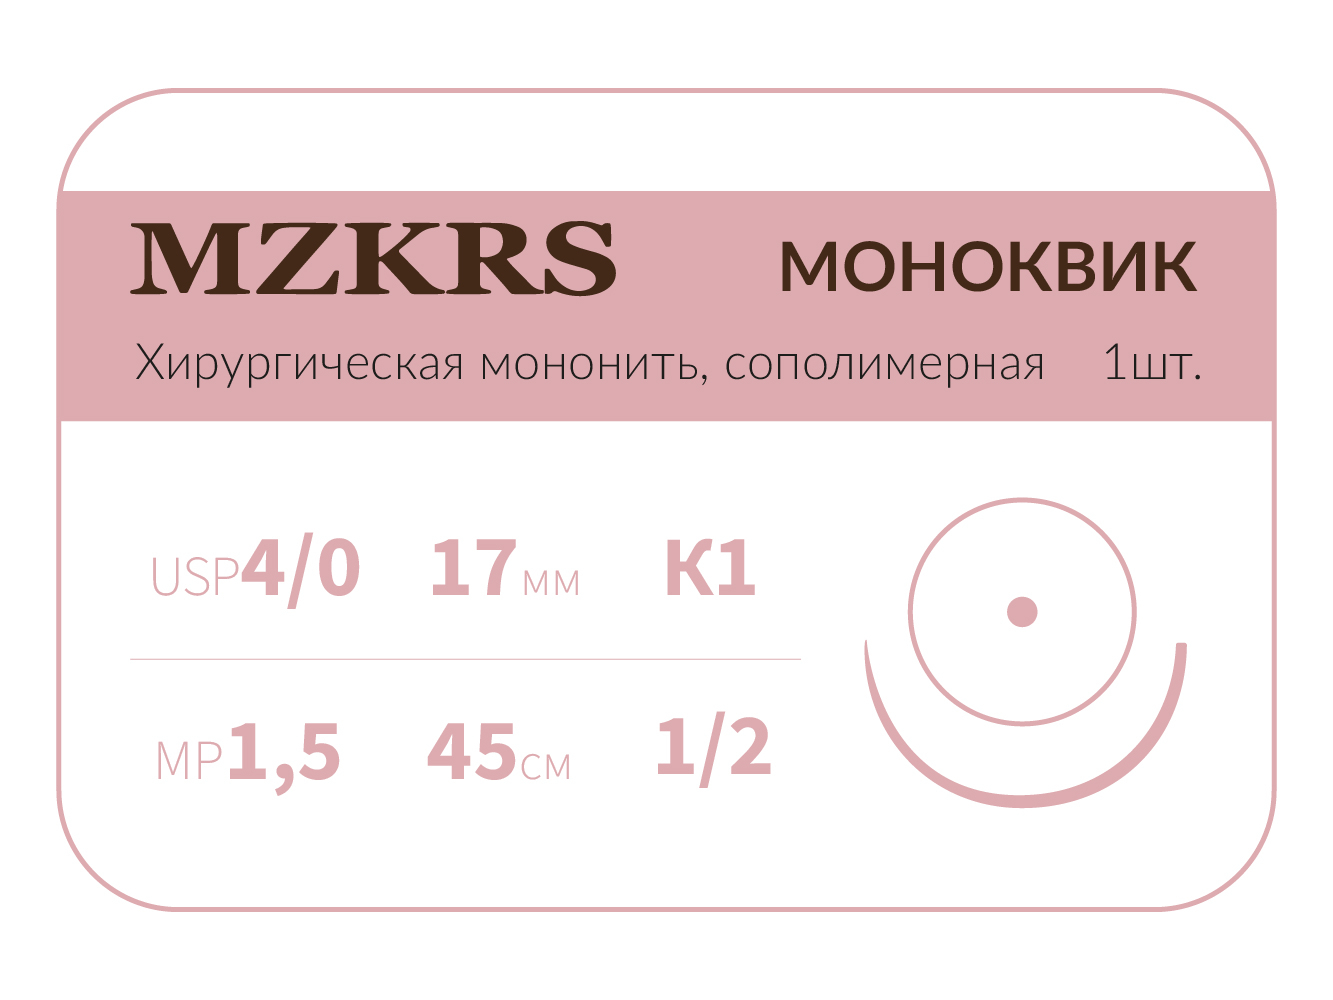 1712К1 Premium-4/0 (1,5)45  МОНК МОНОКВИК хирургическая мононить, сополимерная, колющая игла, MZKRS (Россия)